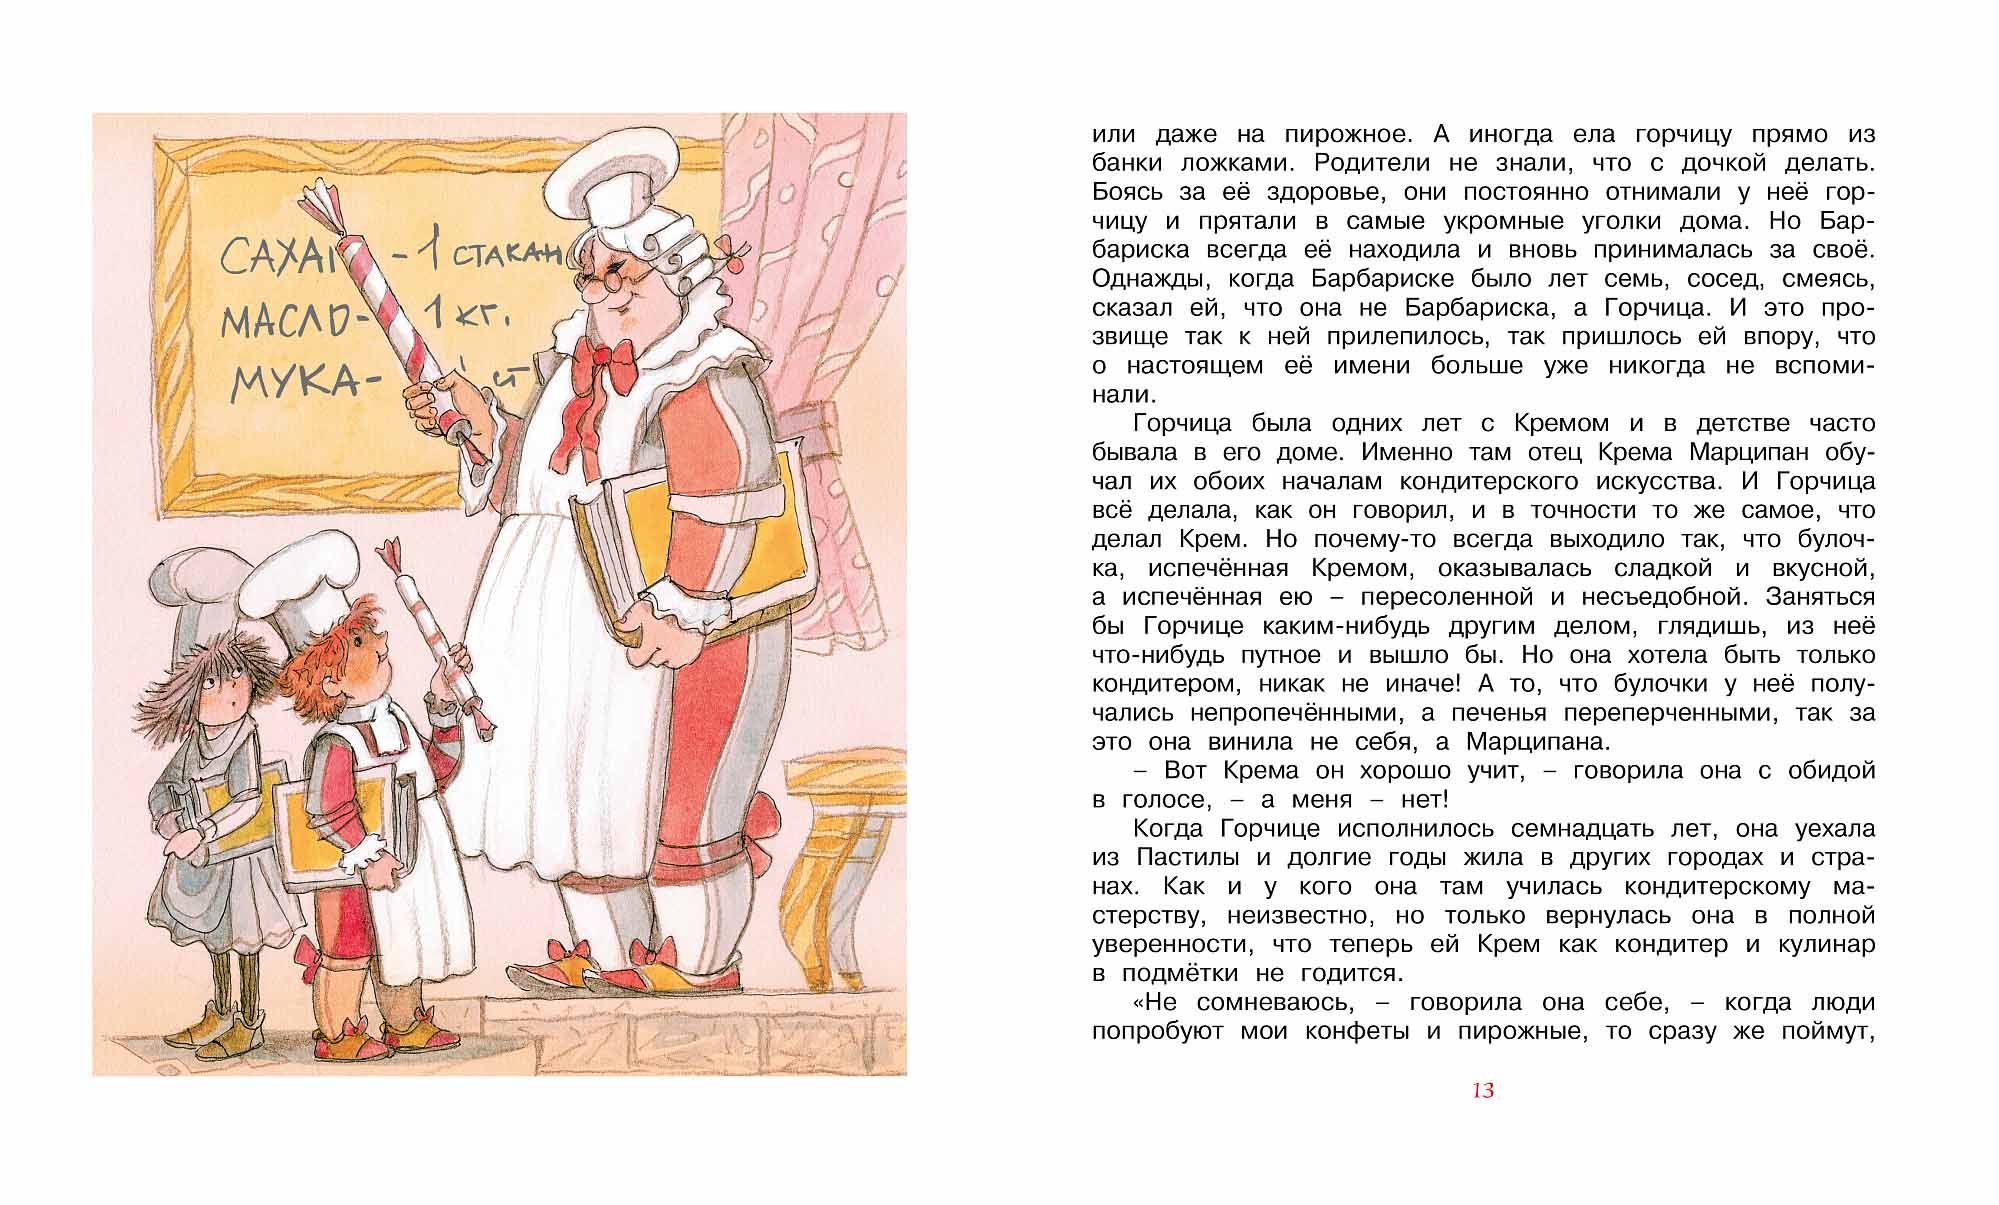 Книга из серии Библиотека детской классики - Приключения Сдобной Лизы, Лунин В.  